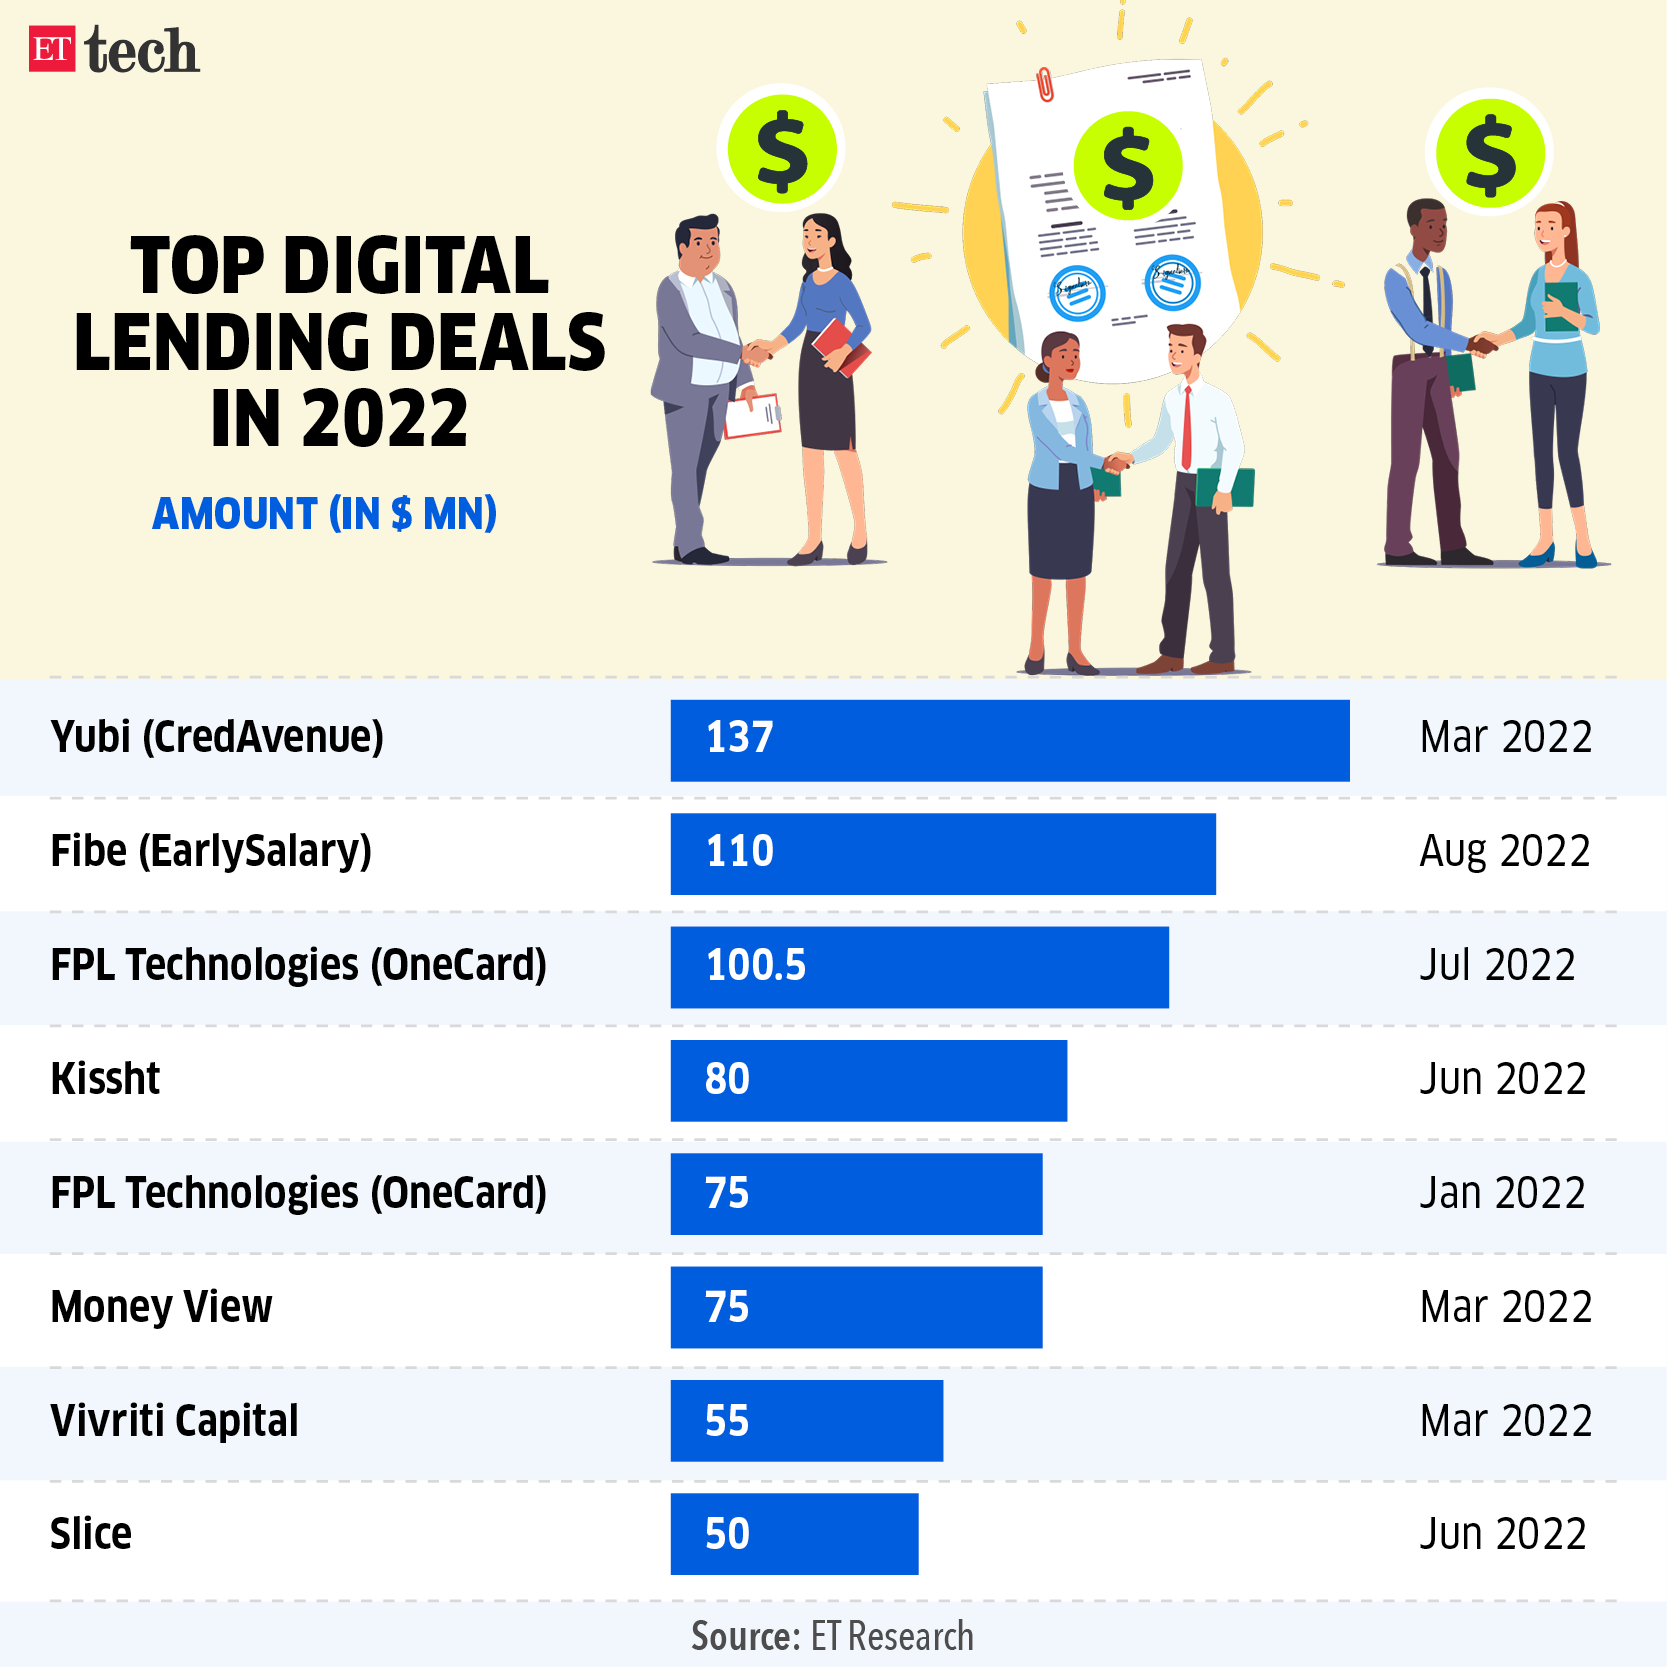 Top digital lending deals in 2022